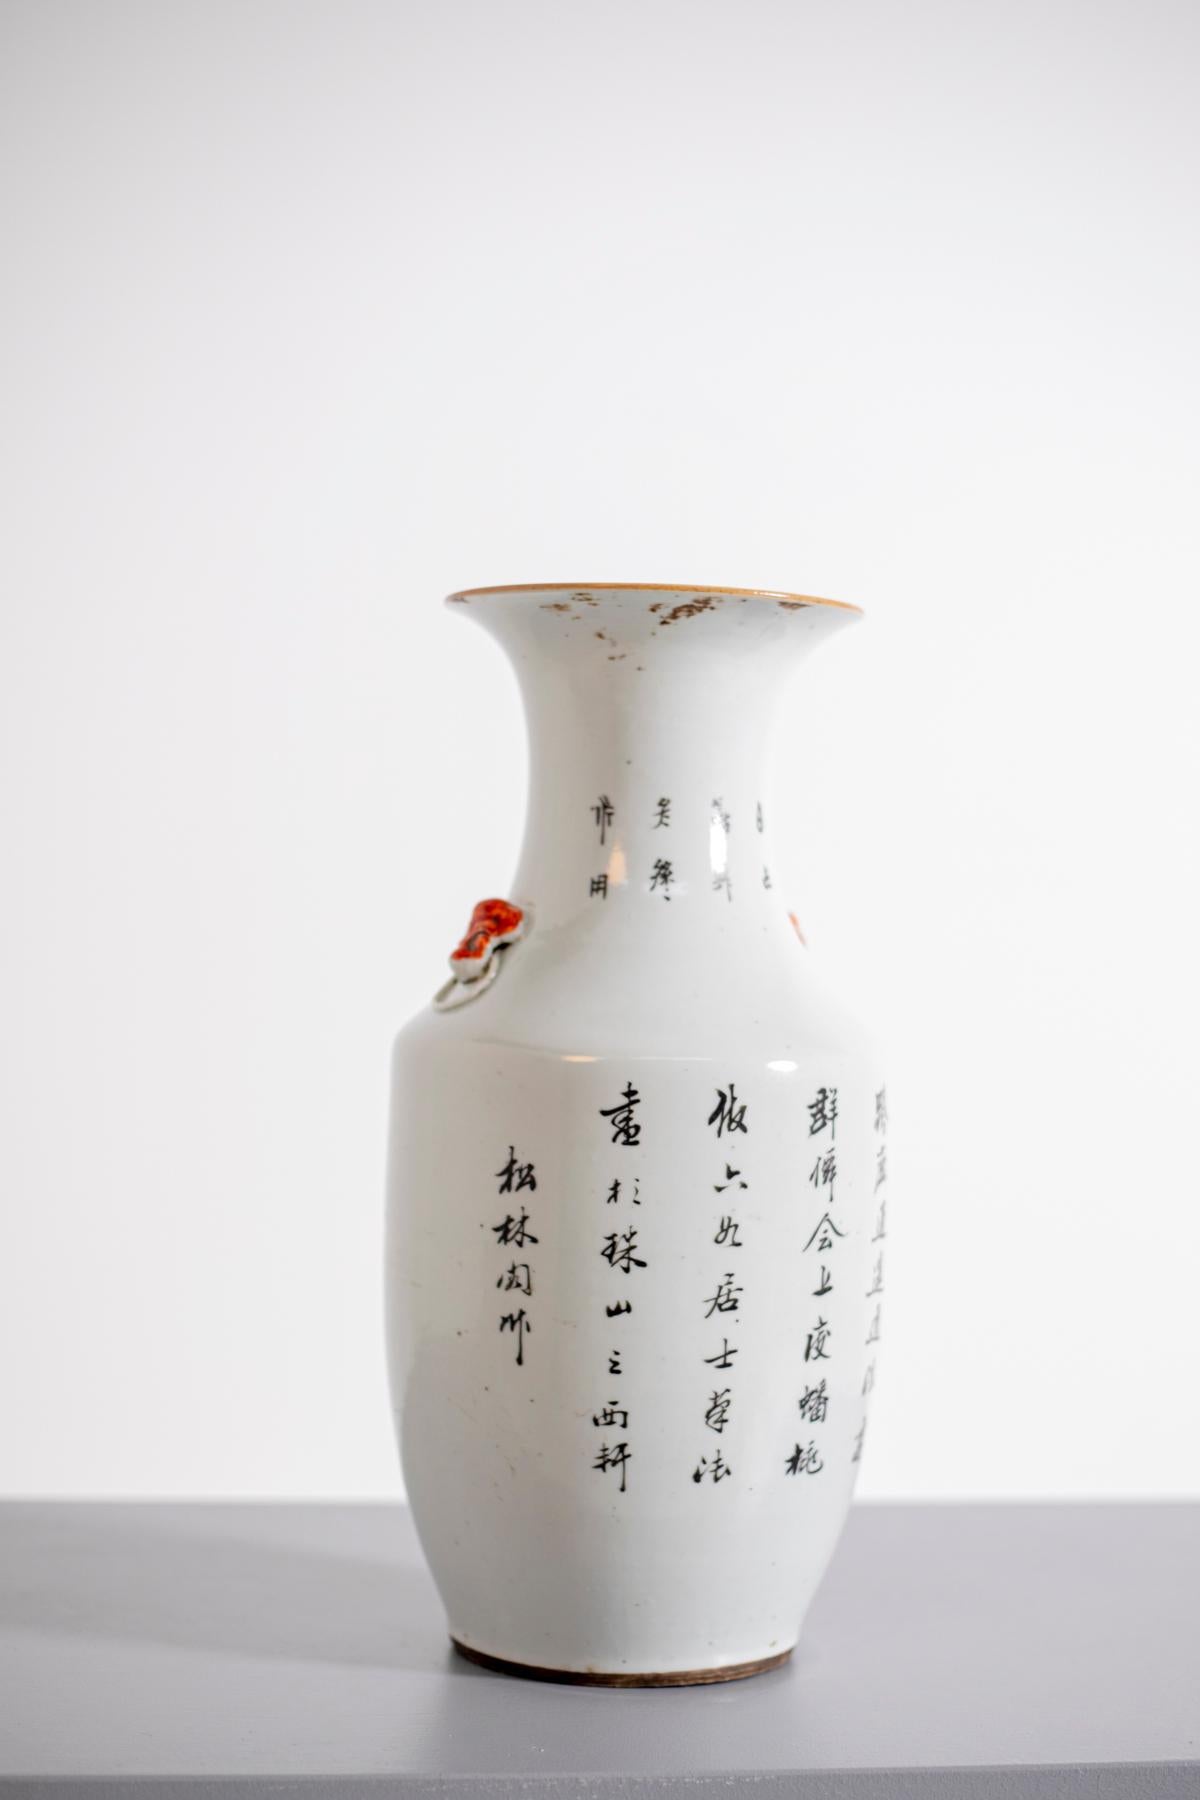 Magnifique vase chinois ancien de la famille rose de la dynastie Ch'ing, datant de la fin des années 1700 - début des années 1800 environ. Cet ancien vase chinois est peint à la main et représente une femme paysanne avec un cerf et un enfant dans